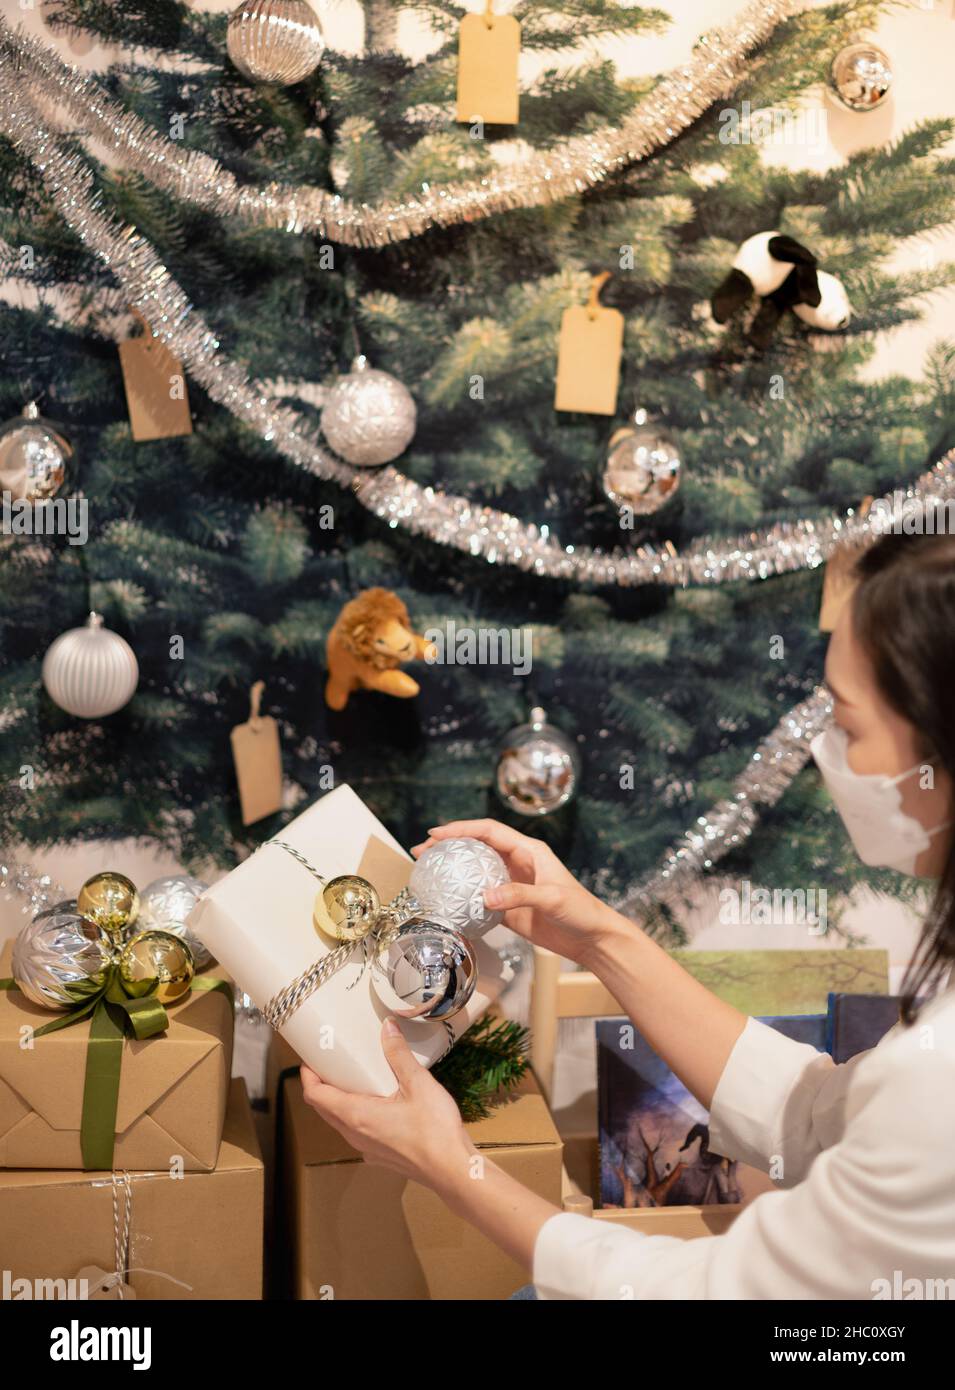 Les mains des femmes tenant boîte cadeau de Noël avec boule d'or et d'argent ornement de Noël pour Noël et fête de nouvel an et de décoration. Banque D'Images